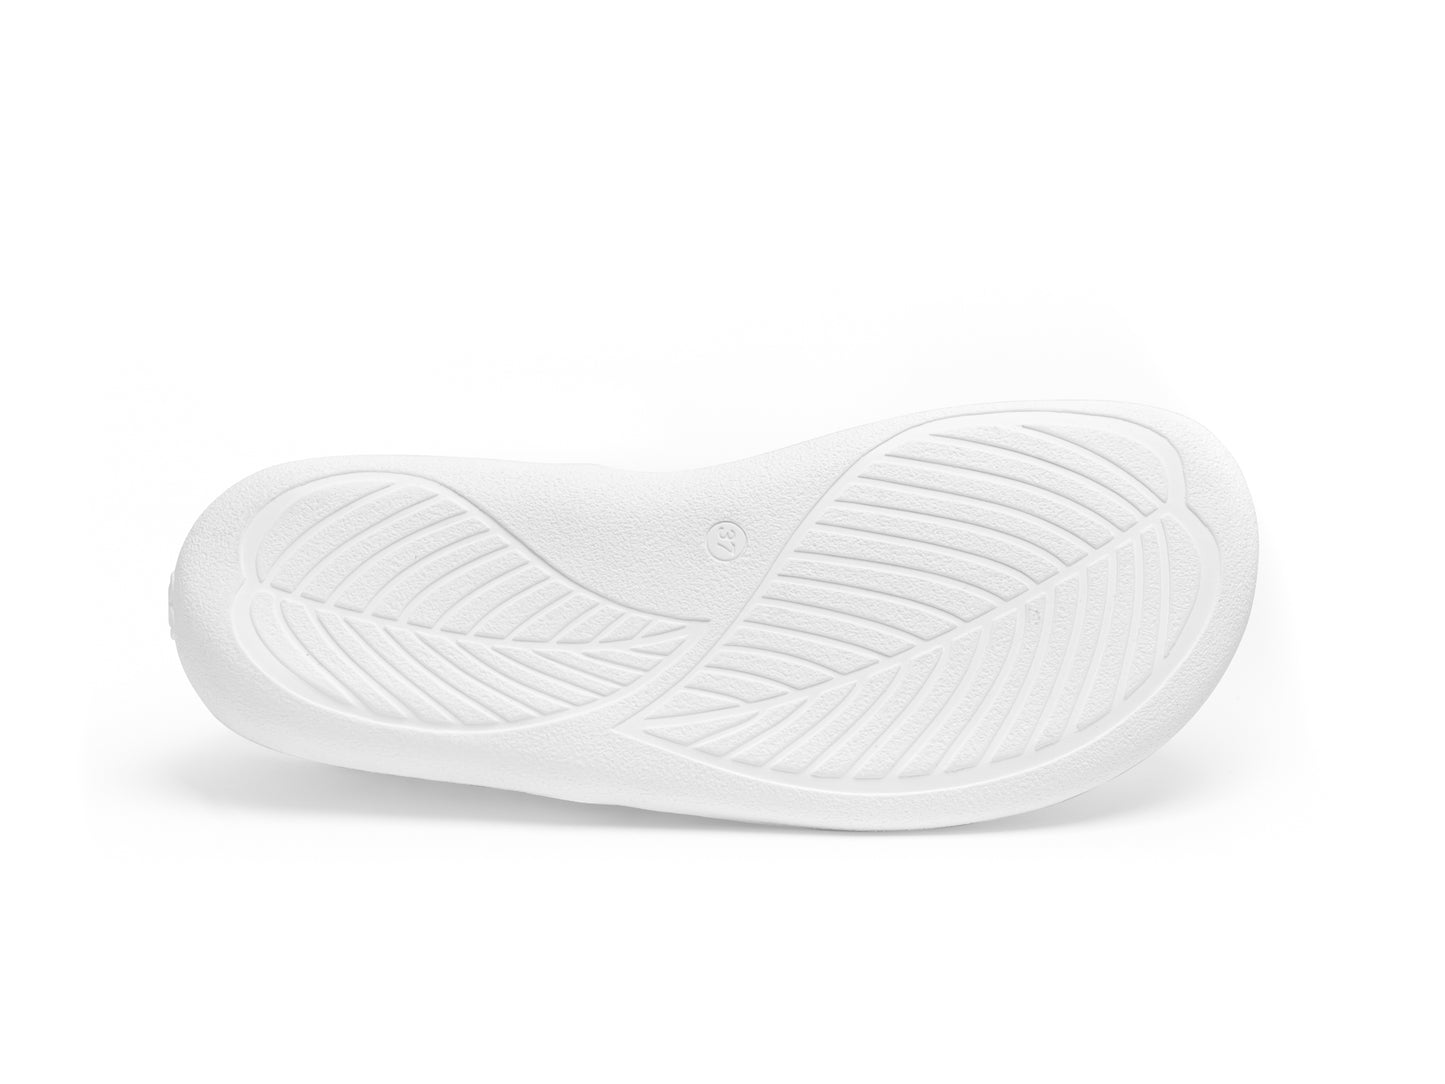 Be Lenka Prime 2.0 Barefoot Sneakers - White